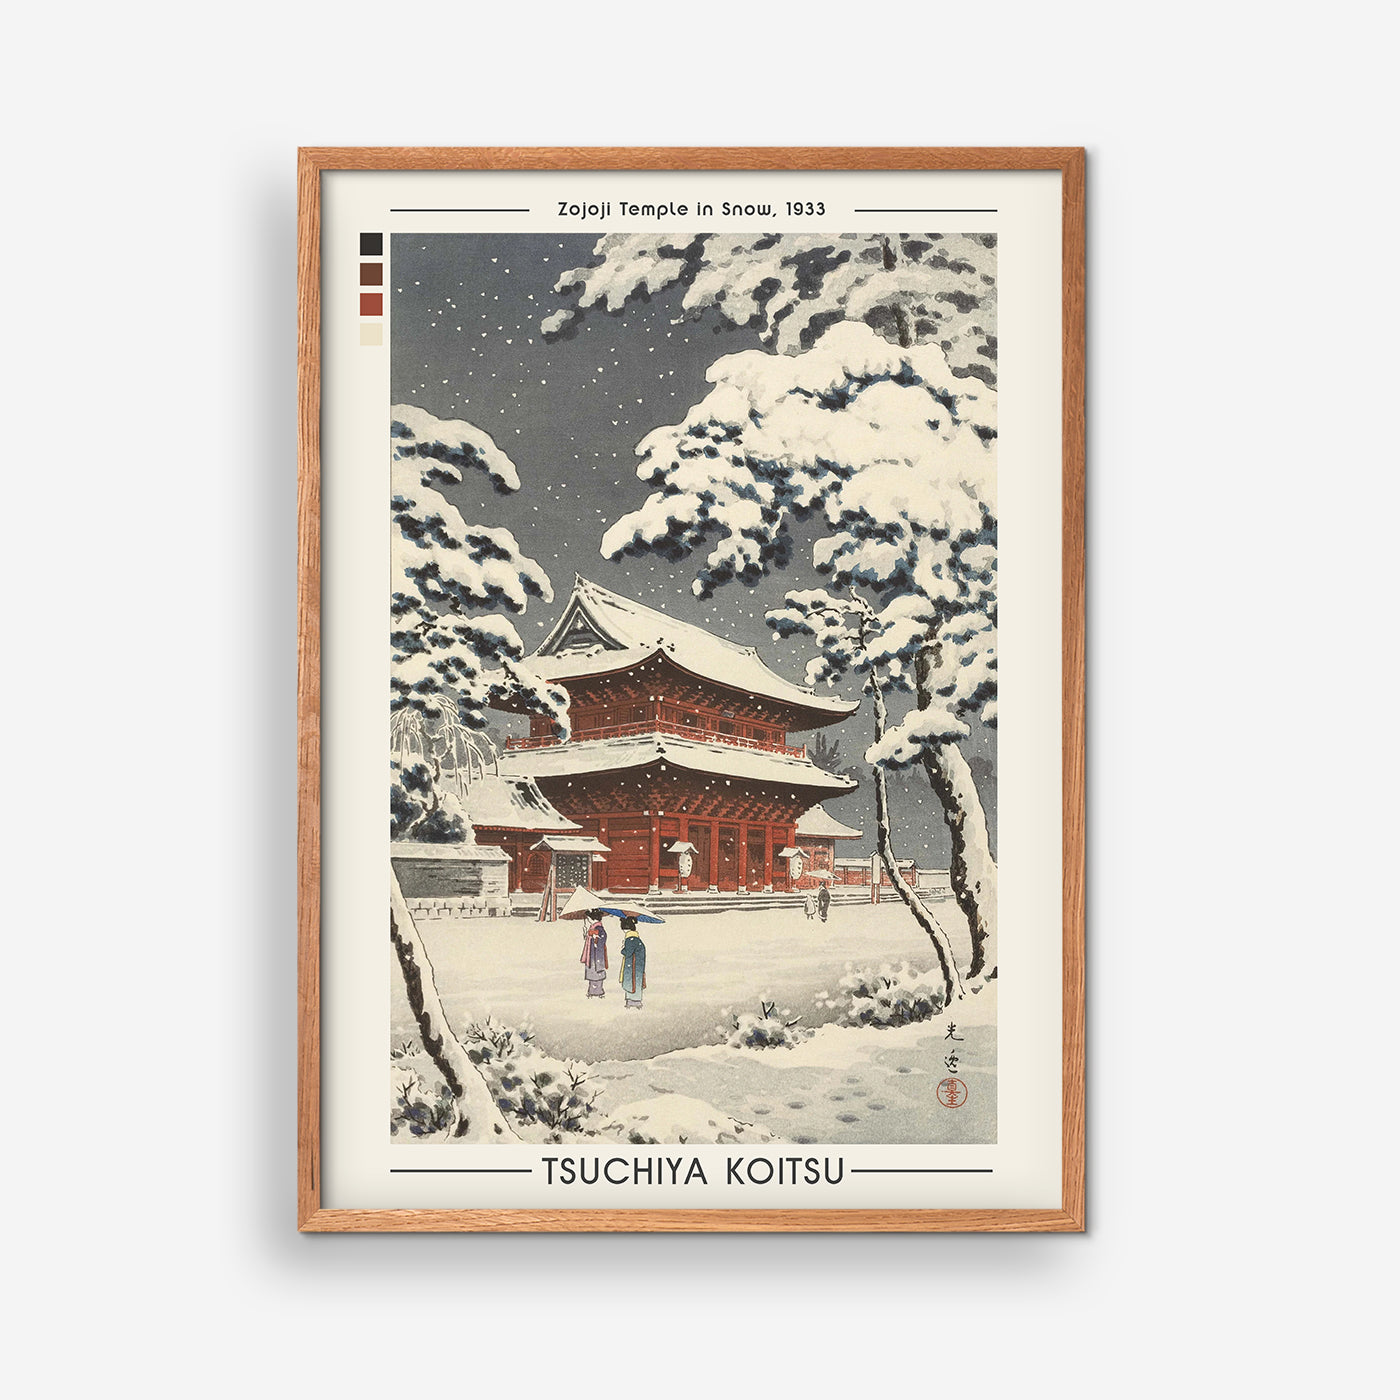 Zojoji Temple in Snow, 1933 - Tsuchiya Koitsu